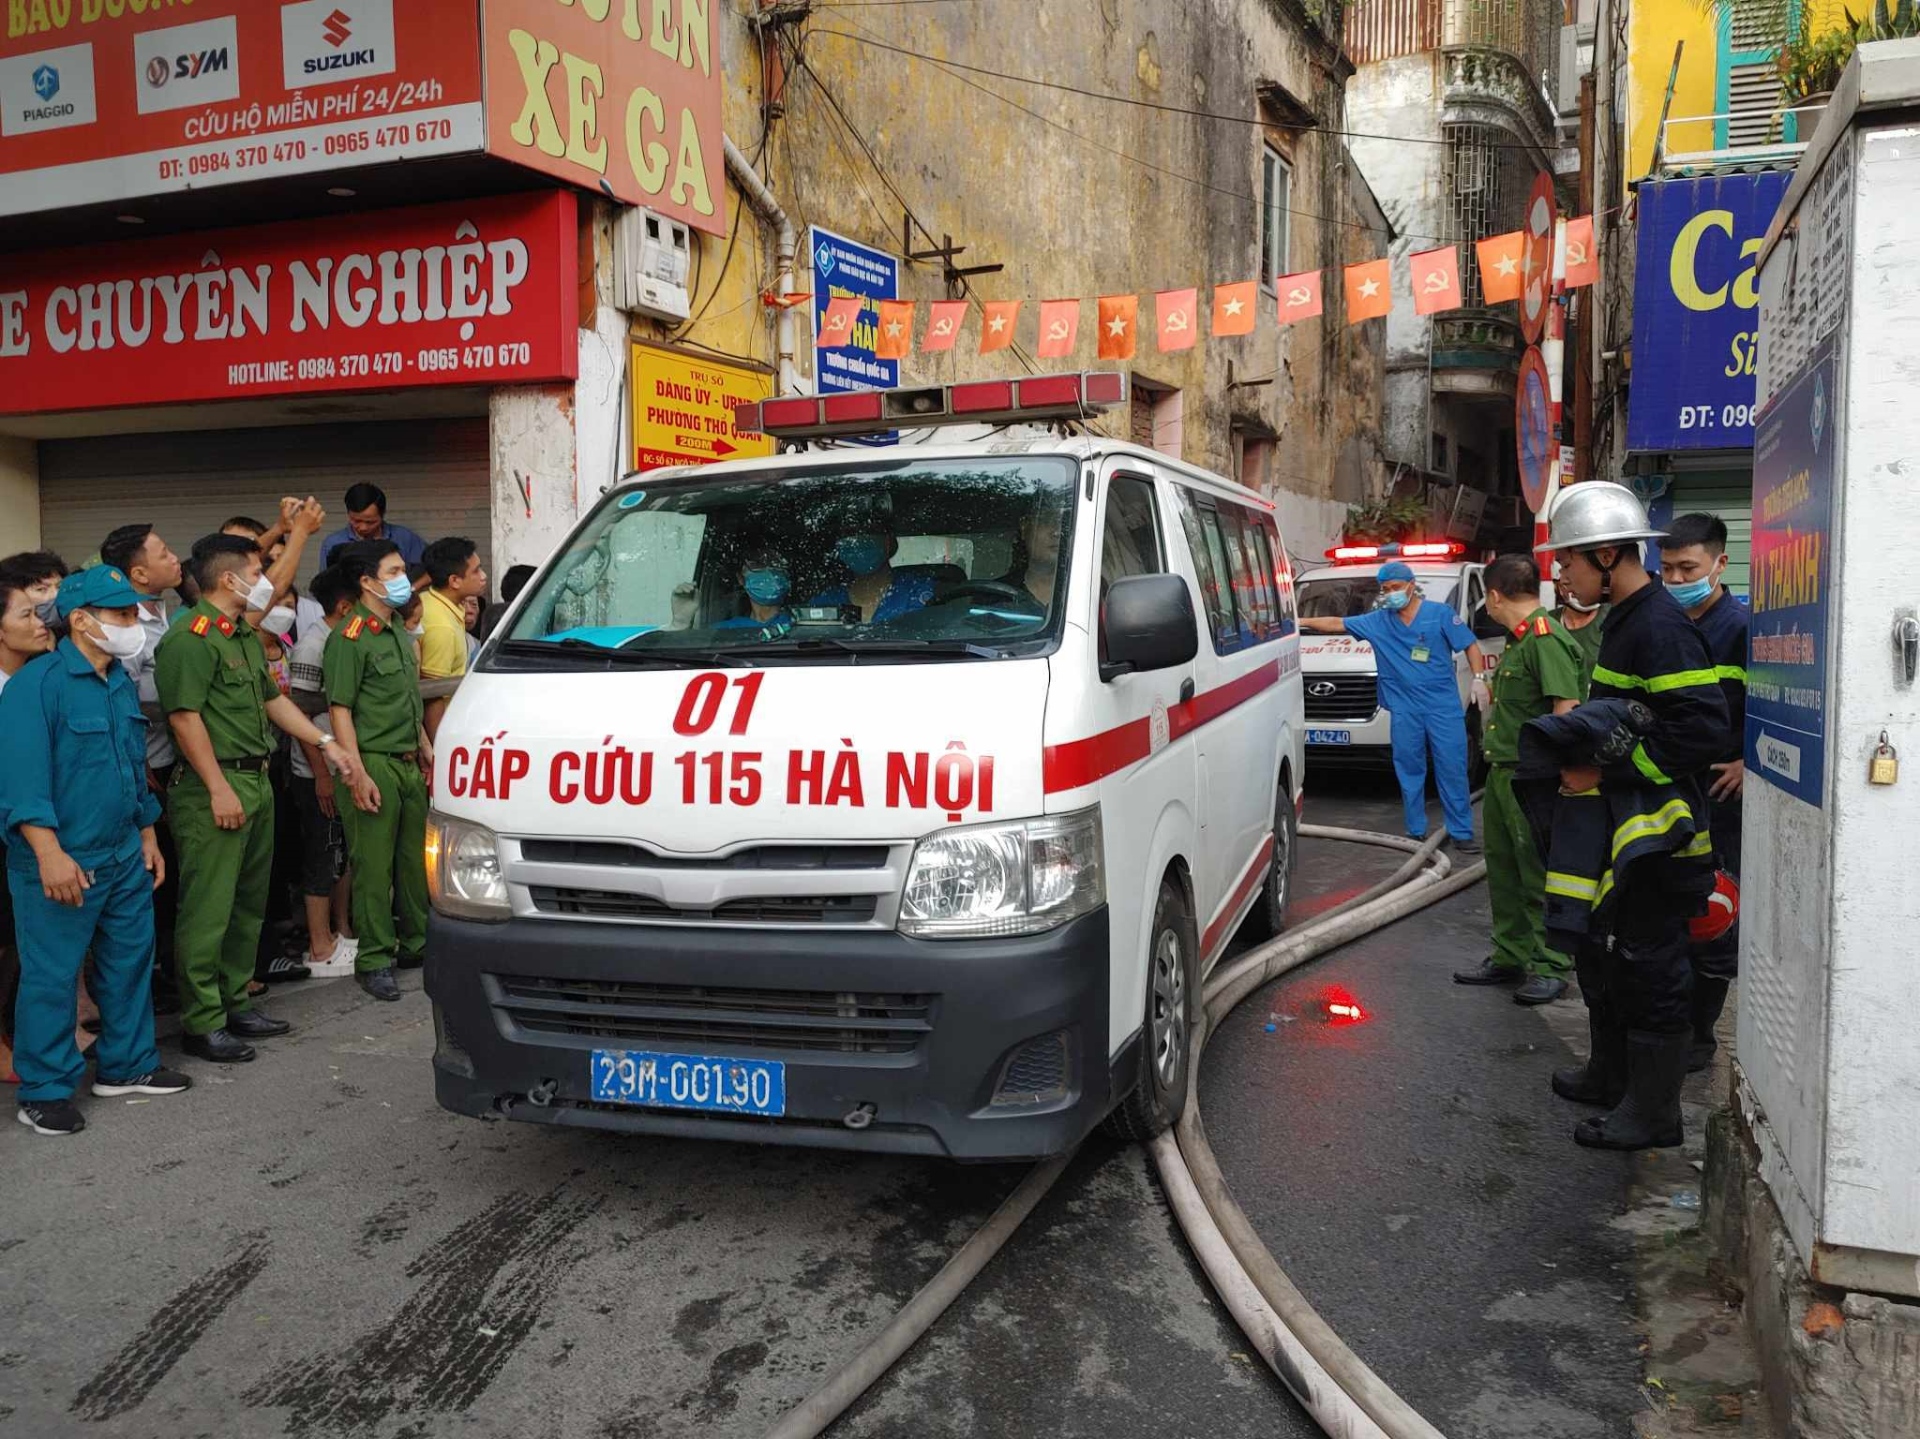 Hiện trường vụ cháy nhà, 3 người chết ở Hà Nội - Ảnh 5.